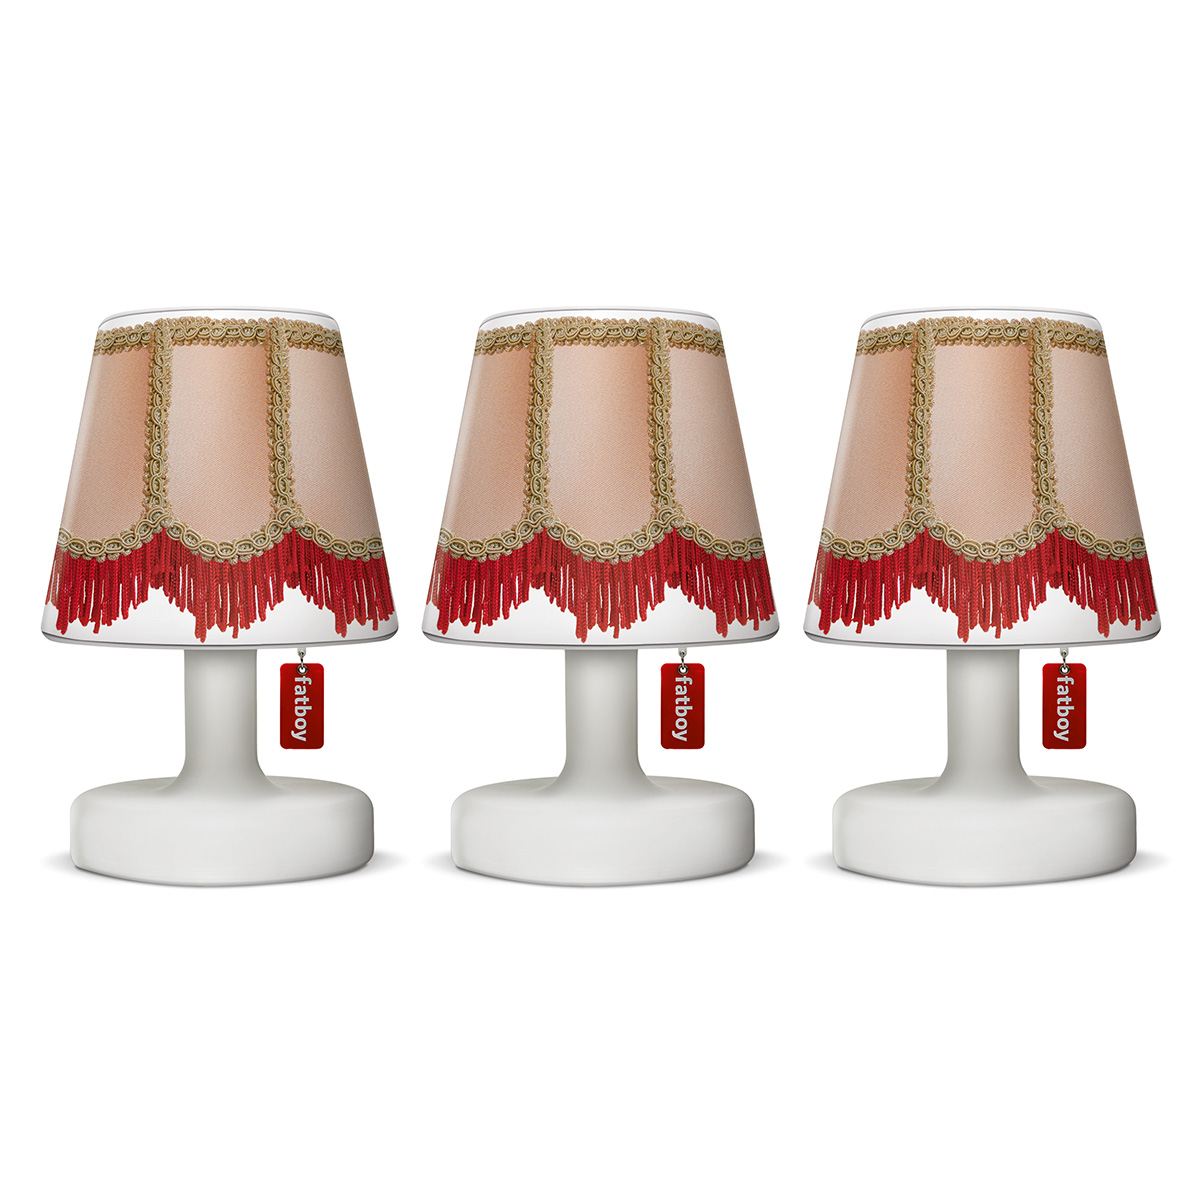 Vrijgekomen snelweg Kaarsen Kunststof lampenkappen: verwisselbare lampenkapjes | Fatboy